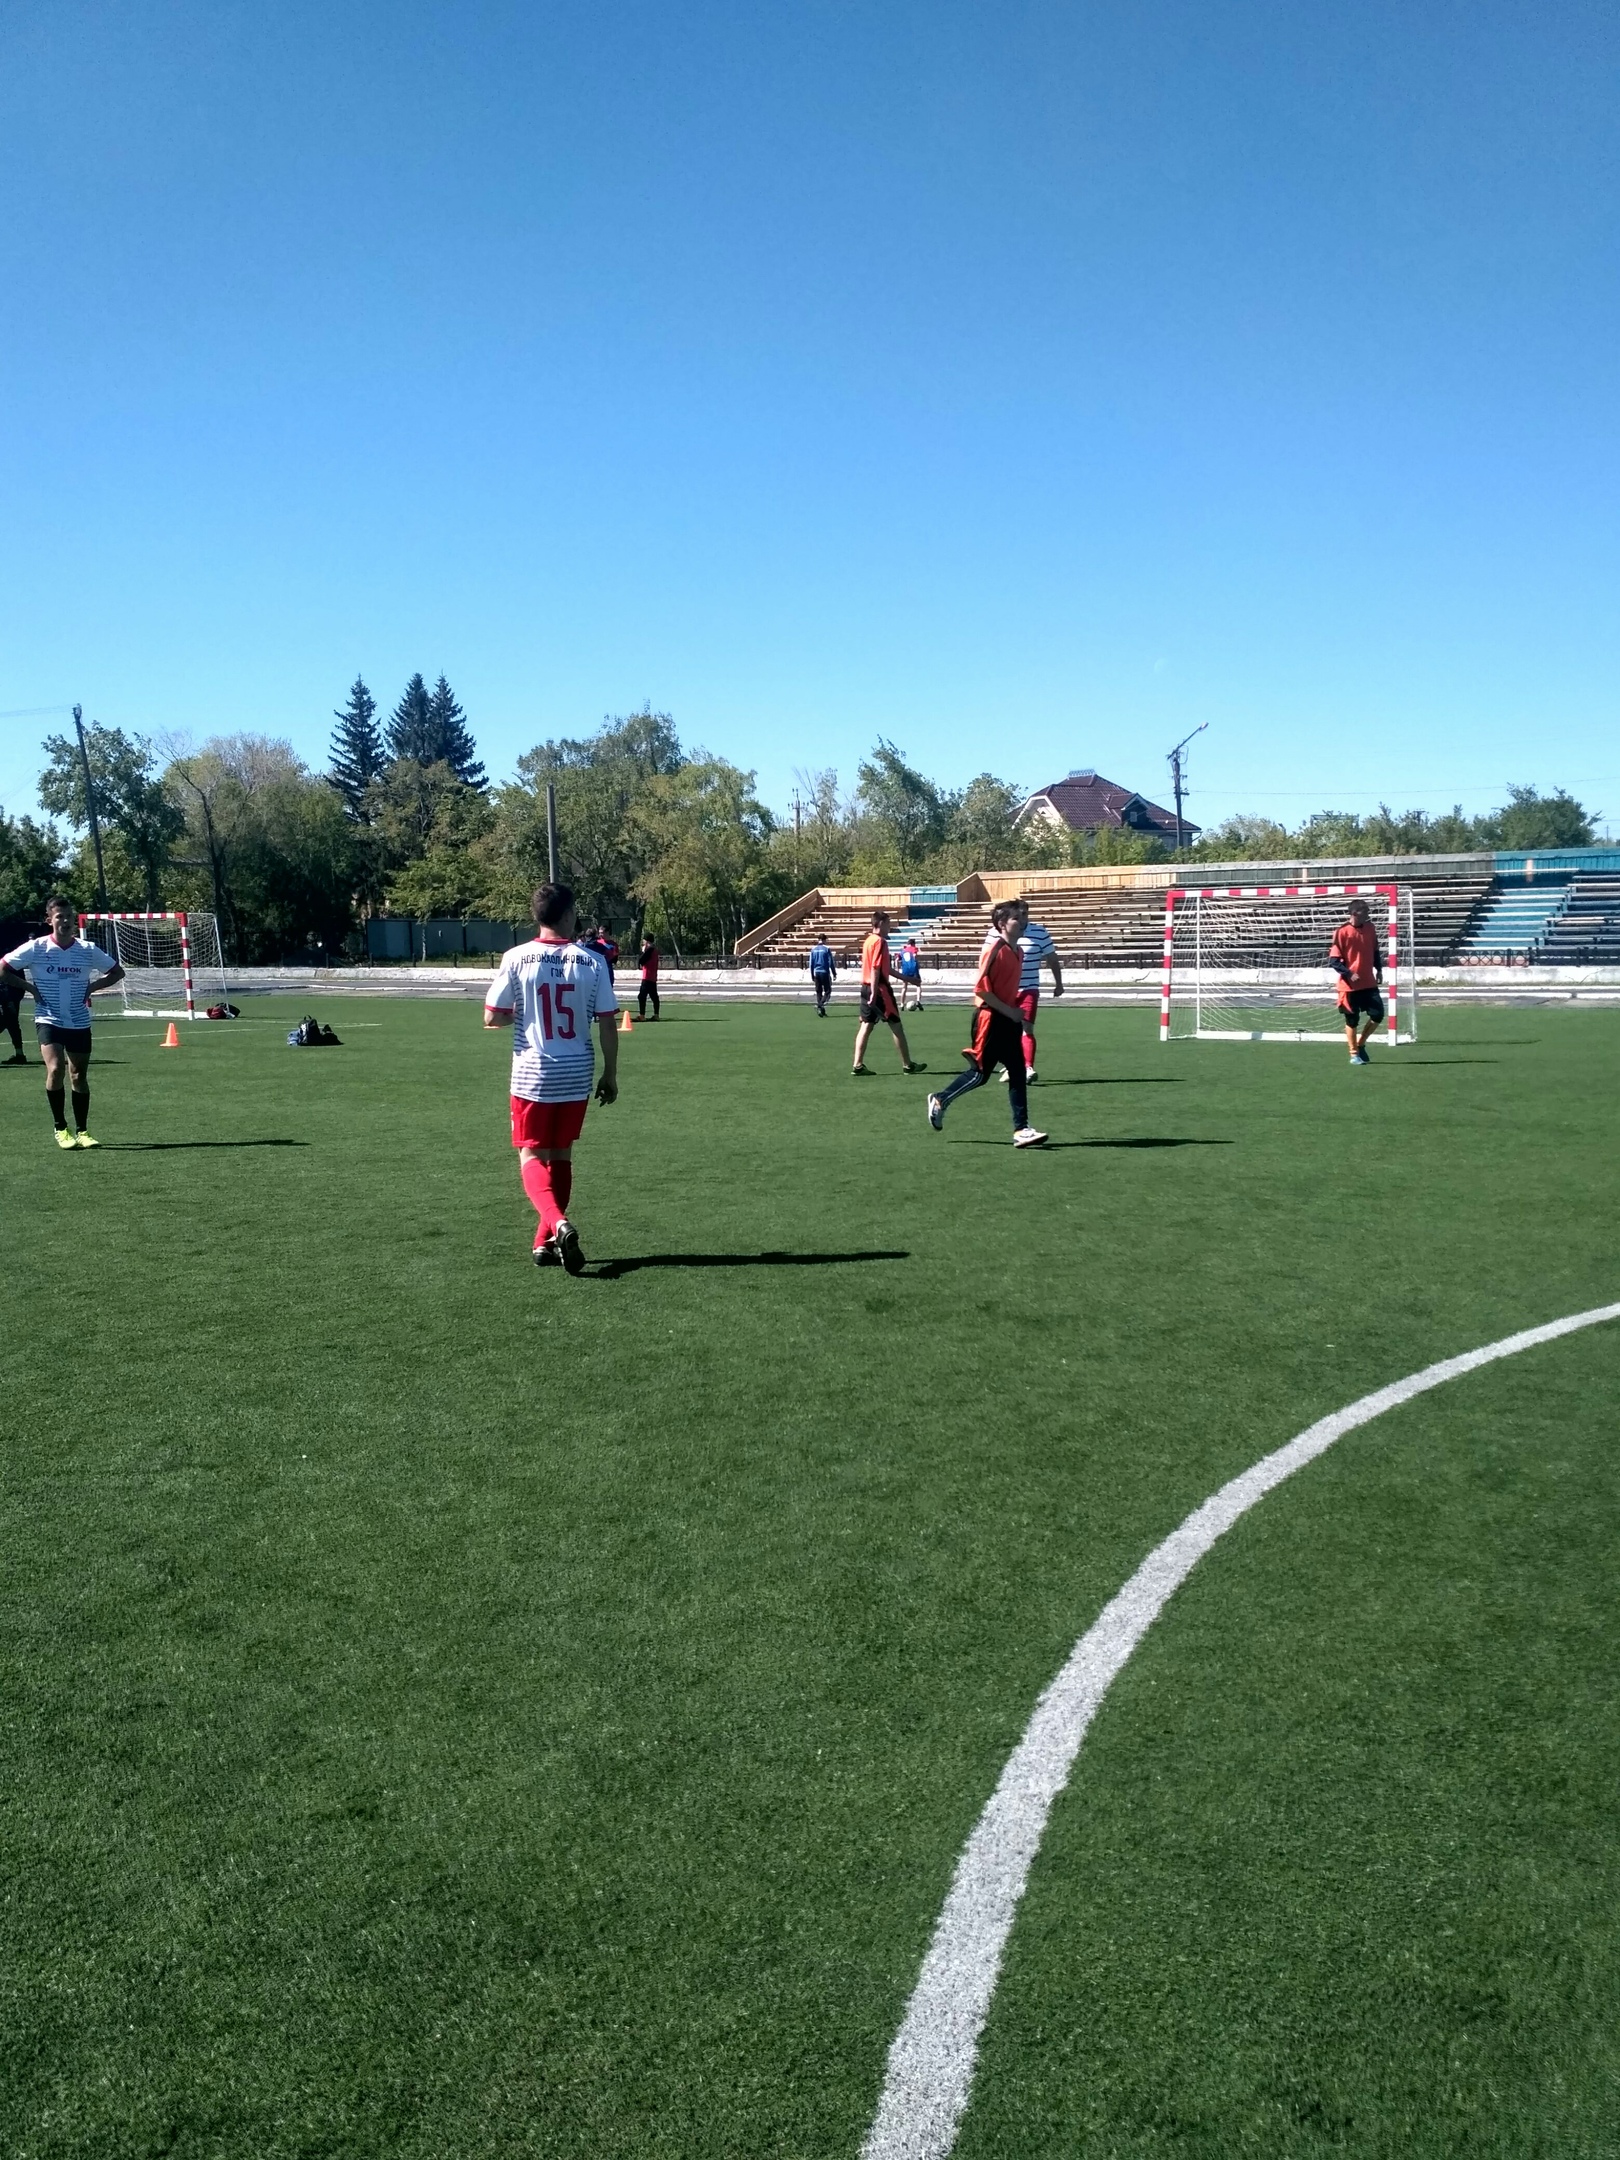 26 мая 2019 года на Спортивном комплексе «Локомотив» проводились зональные соревнования по мини-футболу среди мужских команд сельских поселений в зачет 13 спартакиады Карталинского района. В соревнованиях приняло участие 9 команд. 